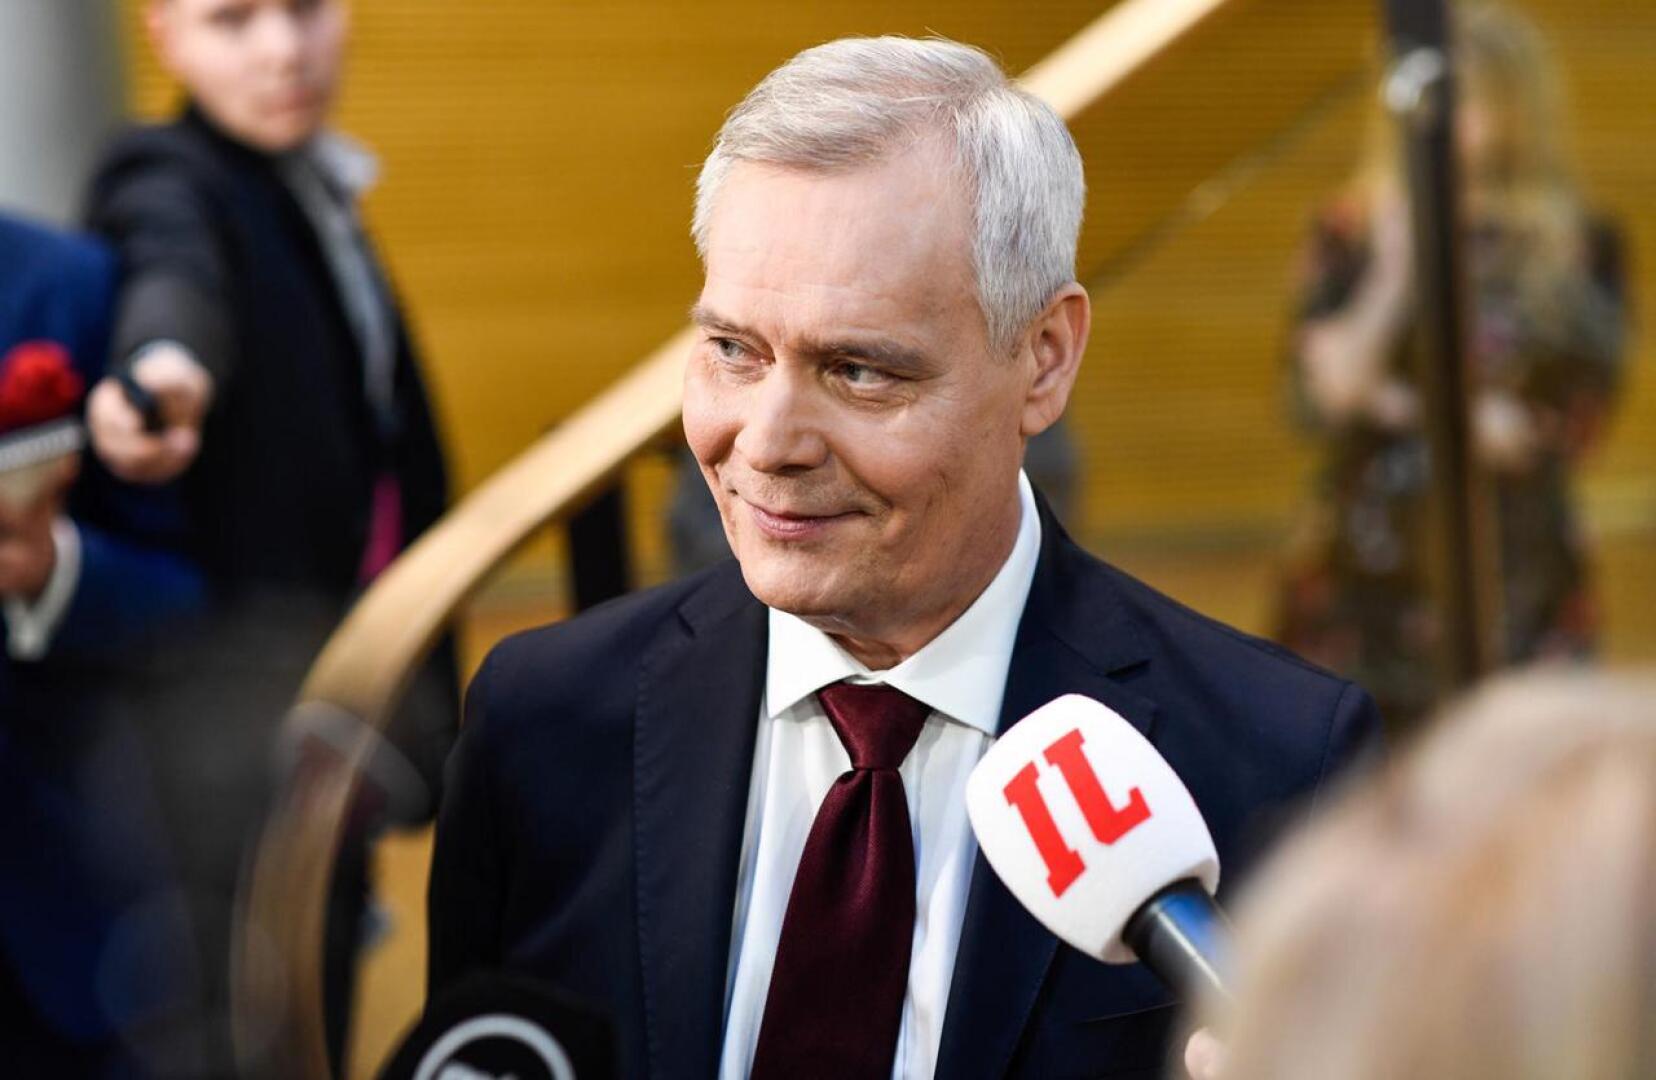 Vaaleissa eniten kansanedustajia saaneen puolueen puheenjohtaja Antti Rinne (sdp) on jo aloittanut hallituksen muodostamisen, vaikka hallitustunnustelijaksi hänet valitaan vasta ensi perjantaina.